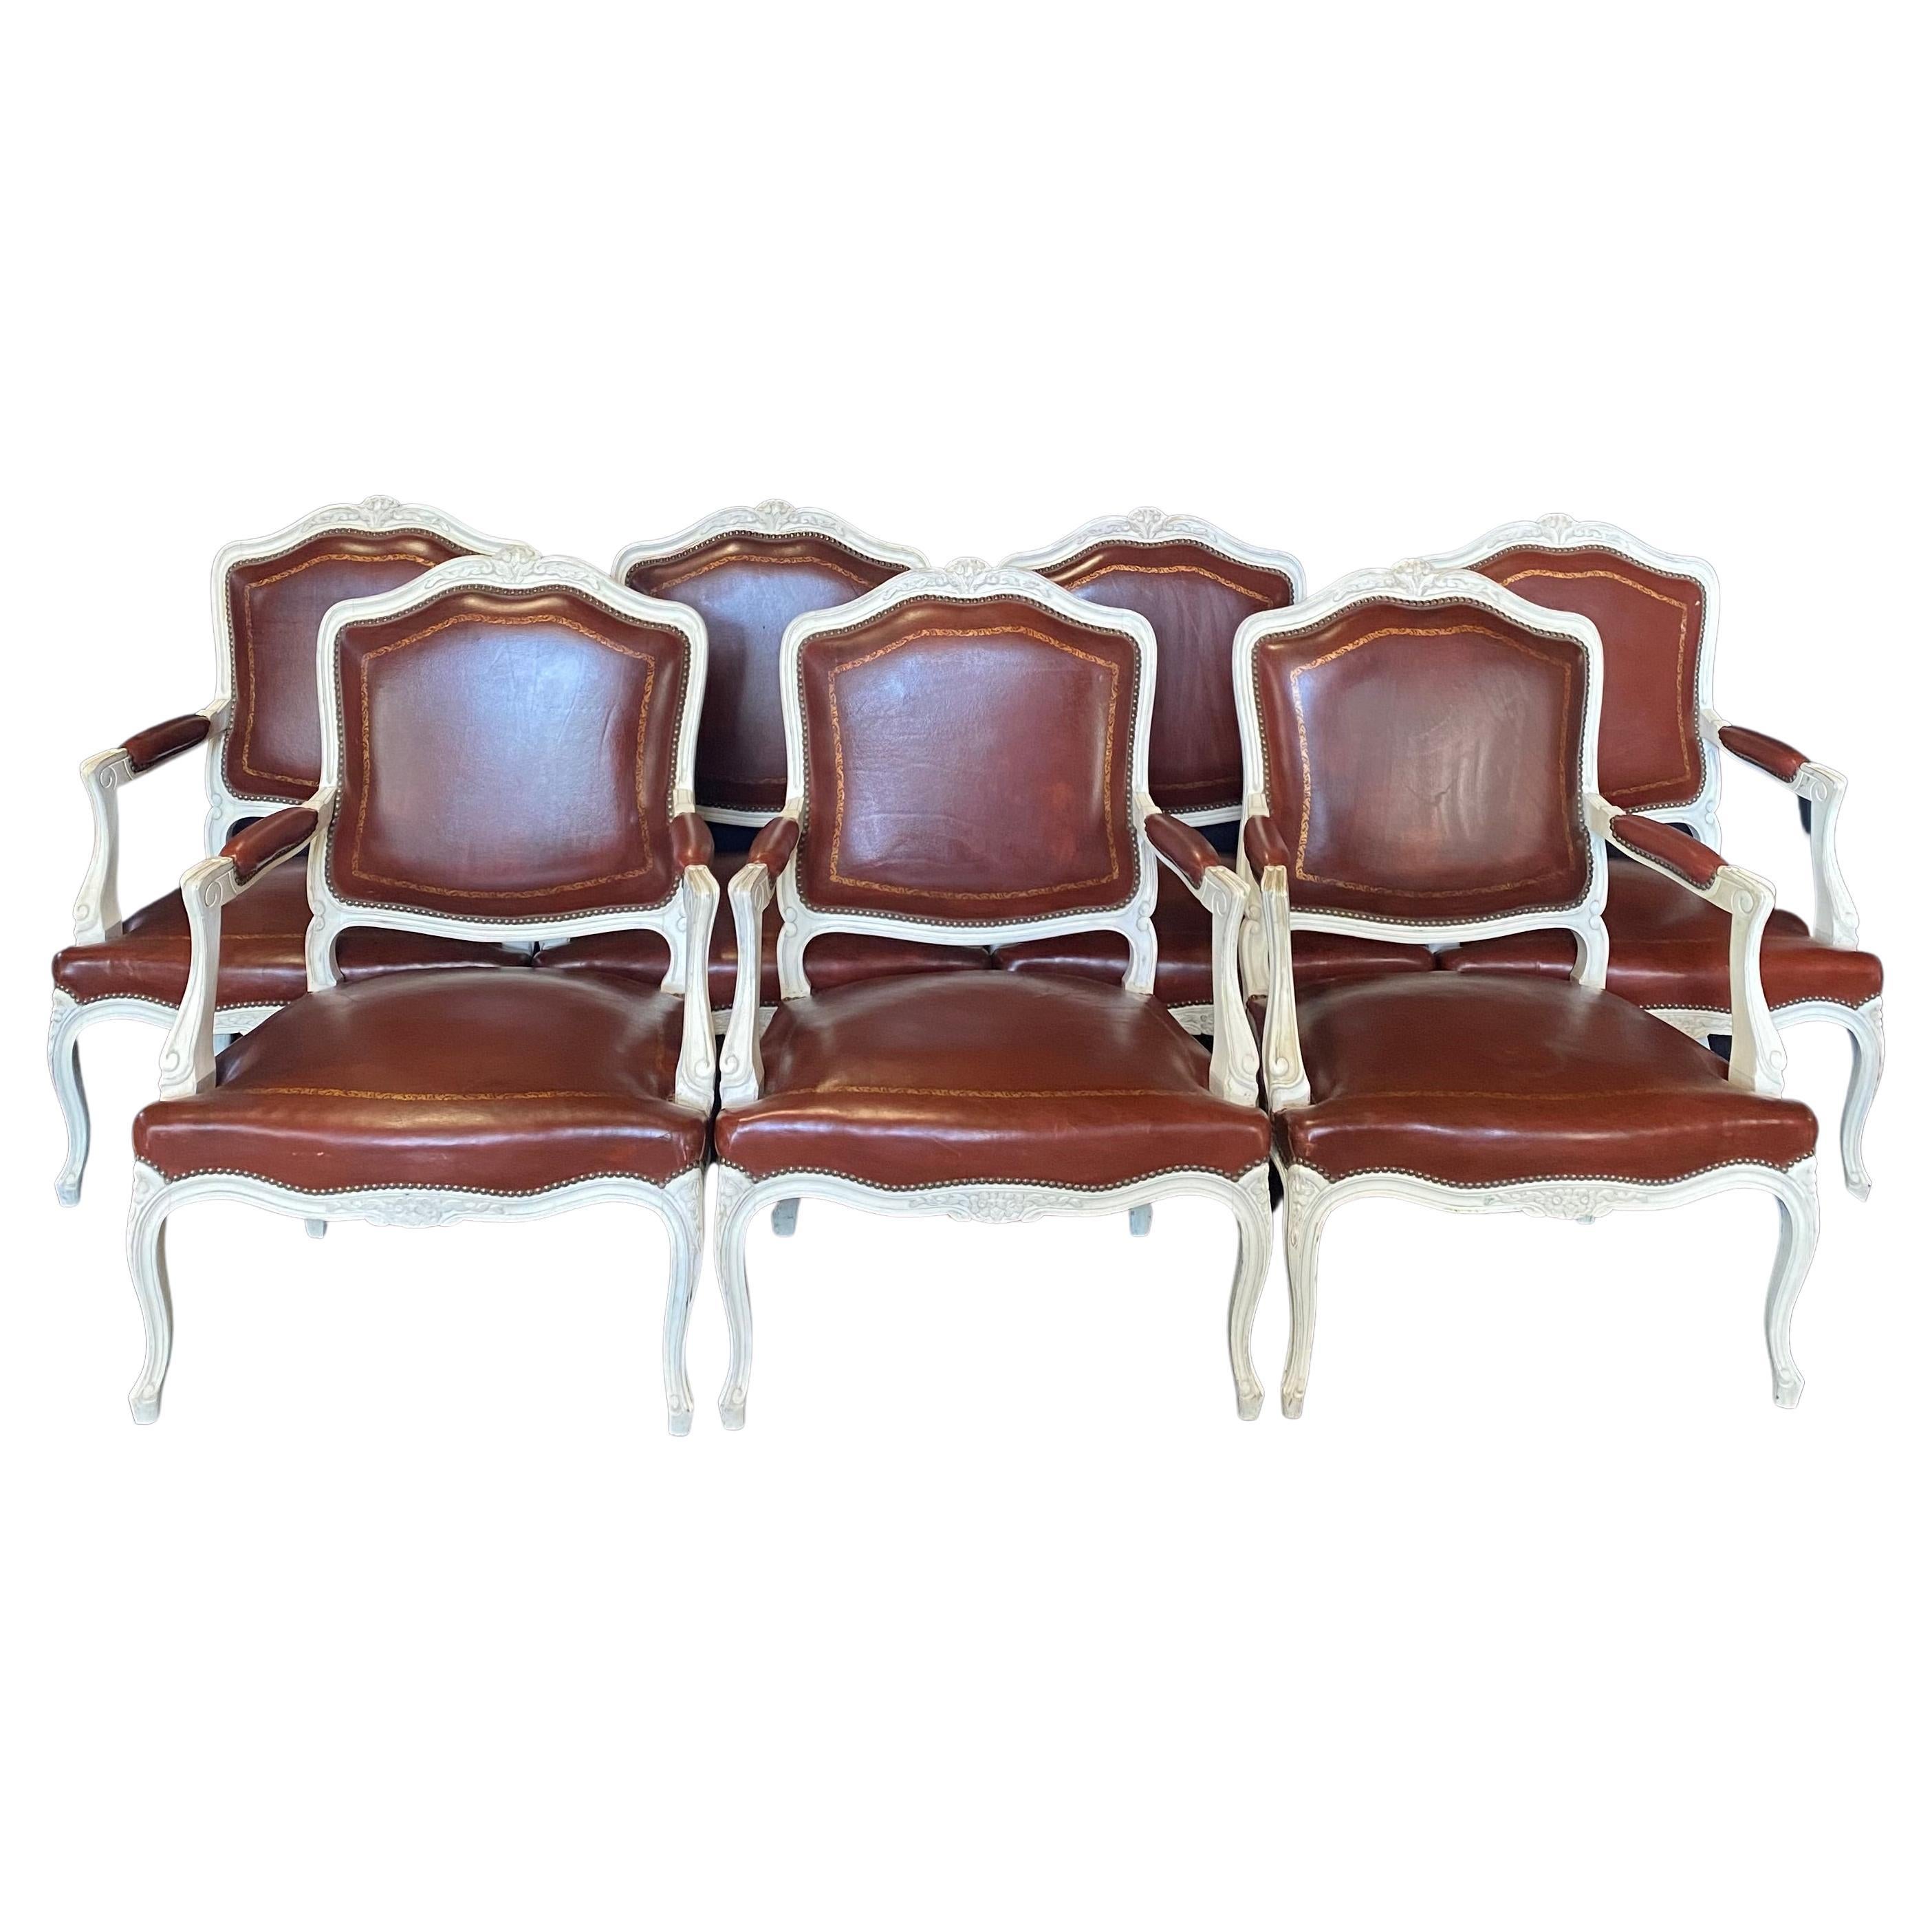 Somptueux ensemble de 7 fauteuils Louis XV en bois peint et embossé en cuir